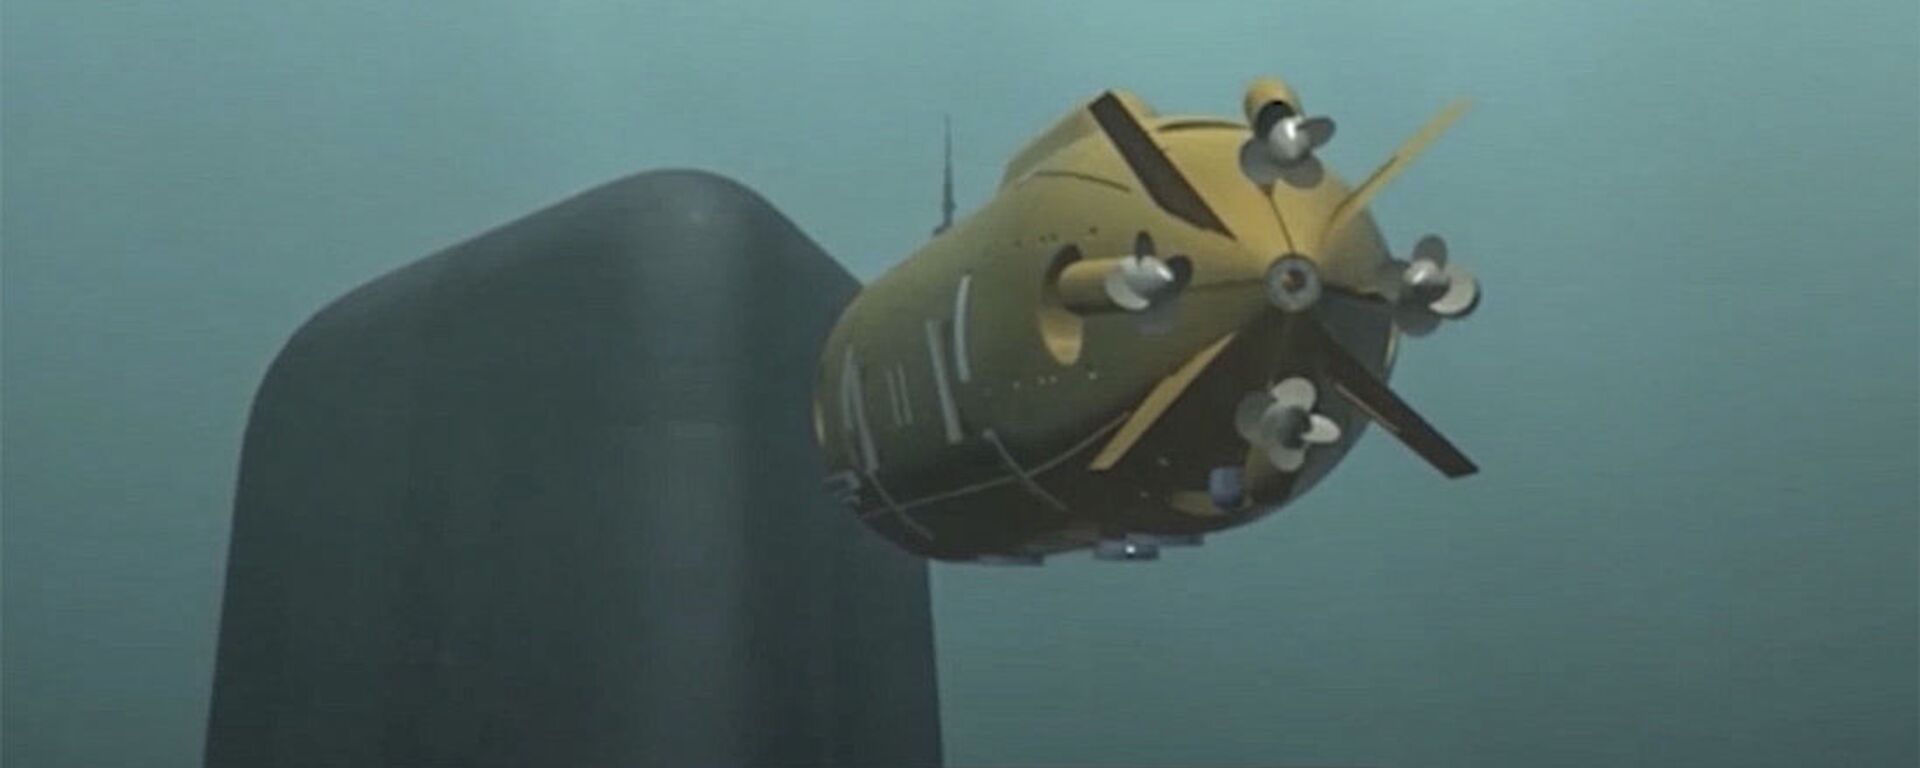 Imagem do novo drone submarino russo mostrada durante a mensagem anual de Vladimir Putin à Assembleia Federal Rússia - Sputnik Brasil, 1920, 11.06.2022